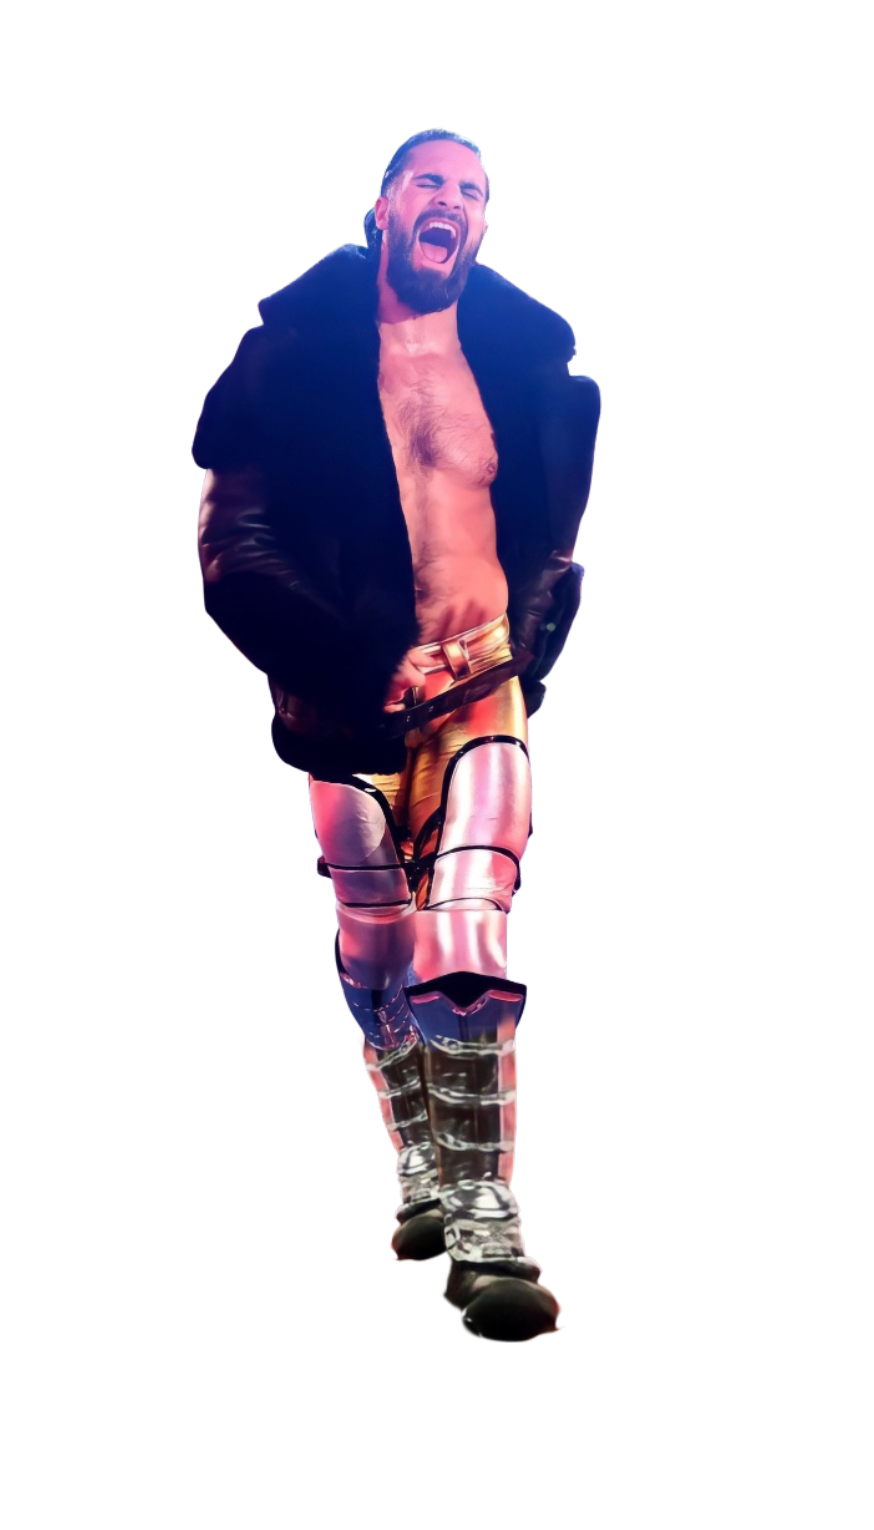 Seth Rollins and Becky Lynch-WWE 2021 by KingOcho3K on DeviantArt